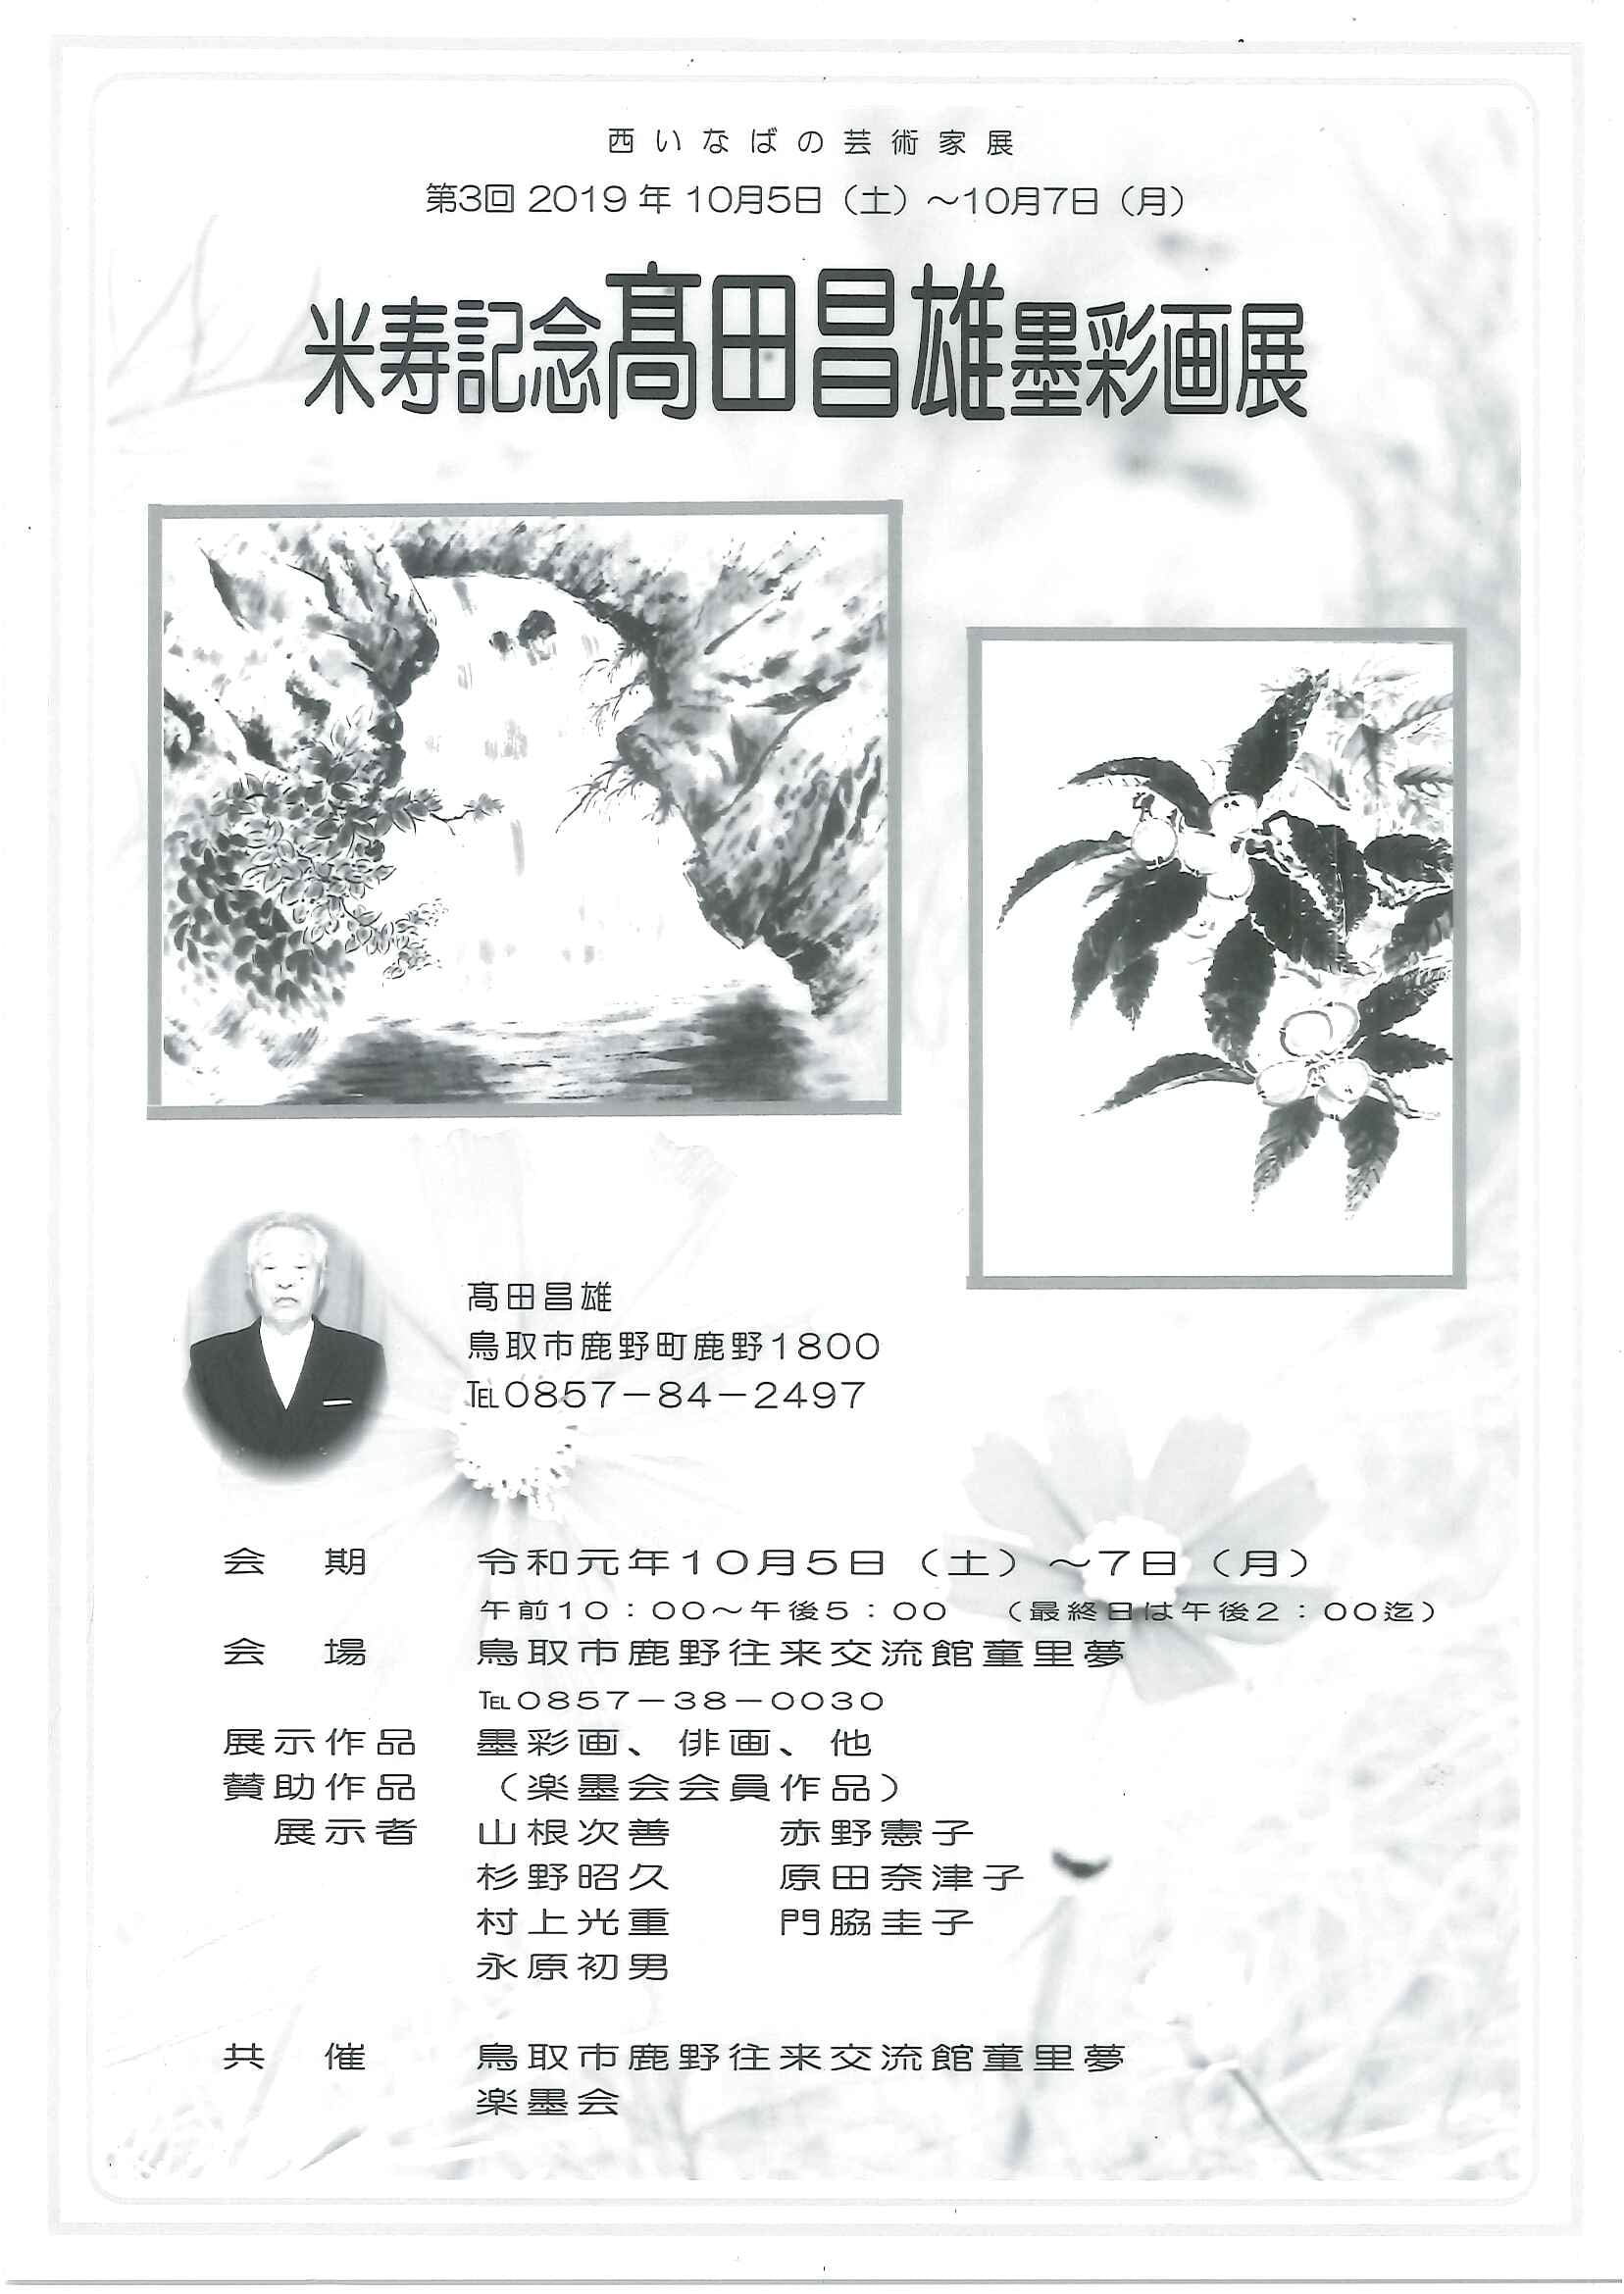 West Inabano Artist Exhibition Third Eighty Eighth Birthday Memory Masao Takada Sumi Aya Image Exhibition Holding